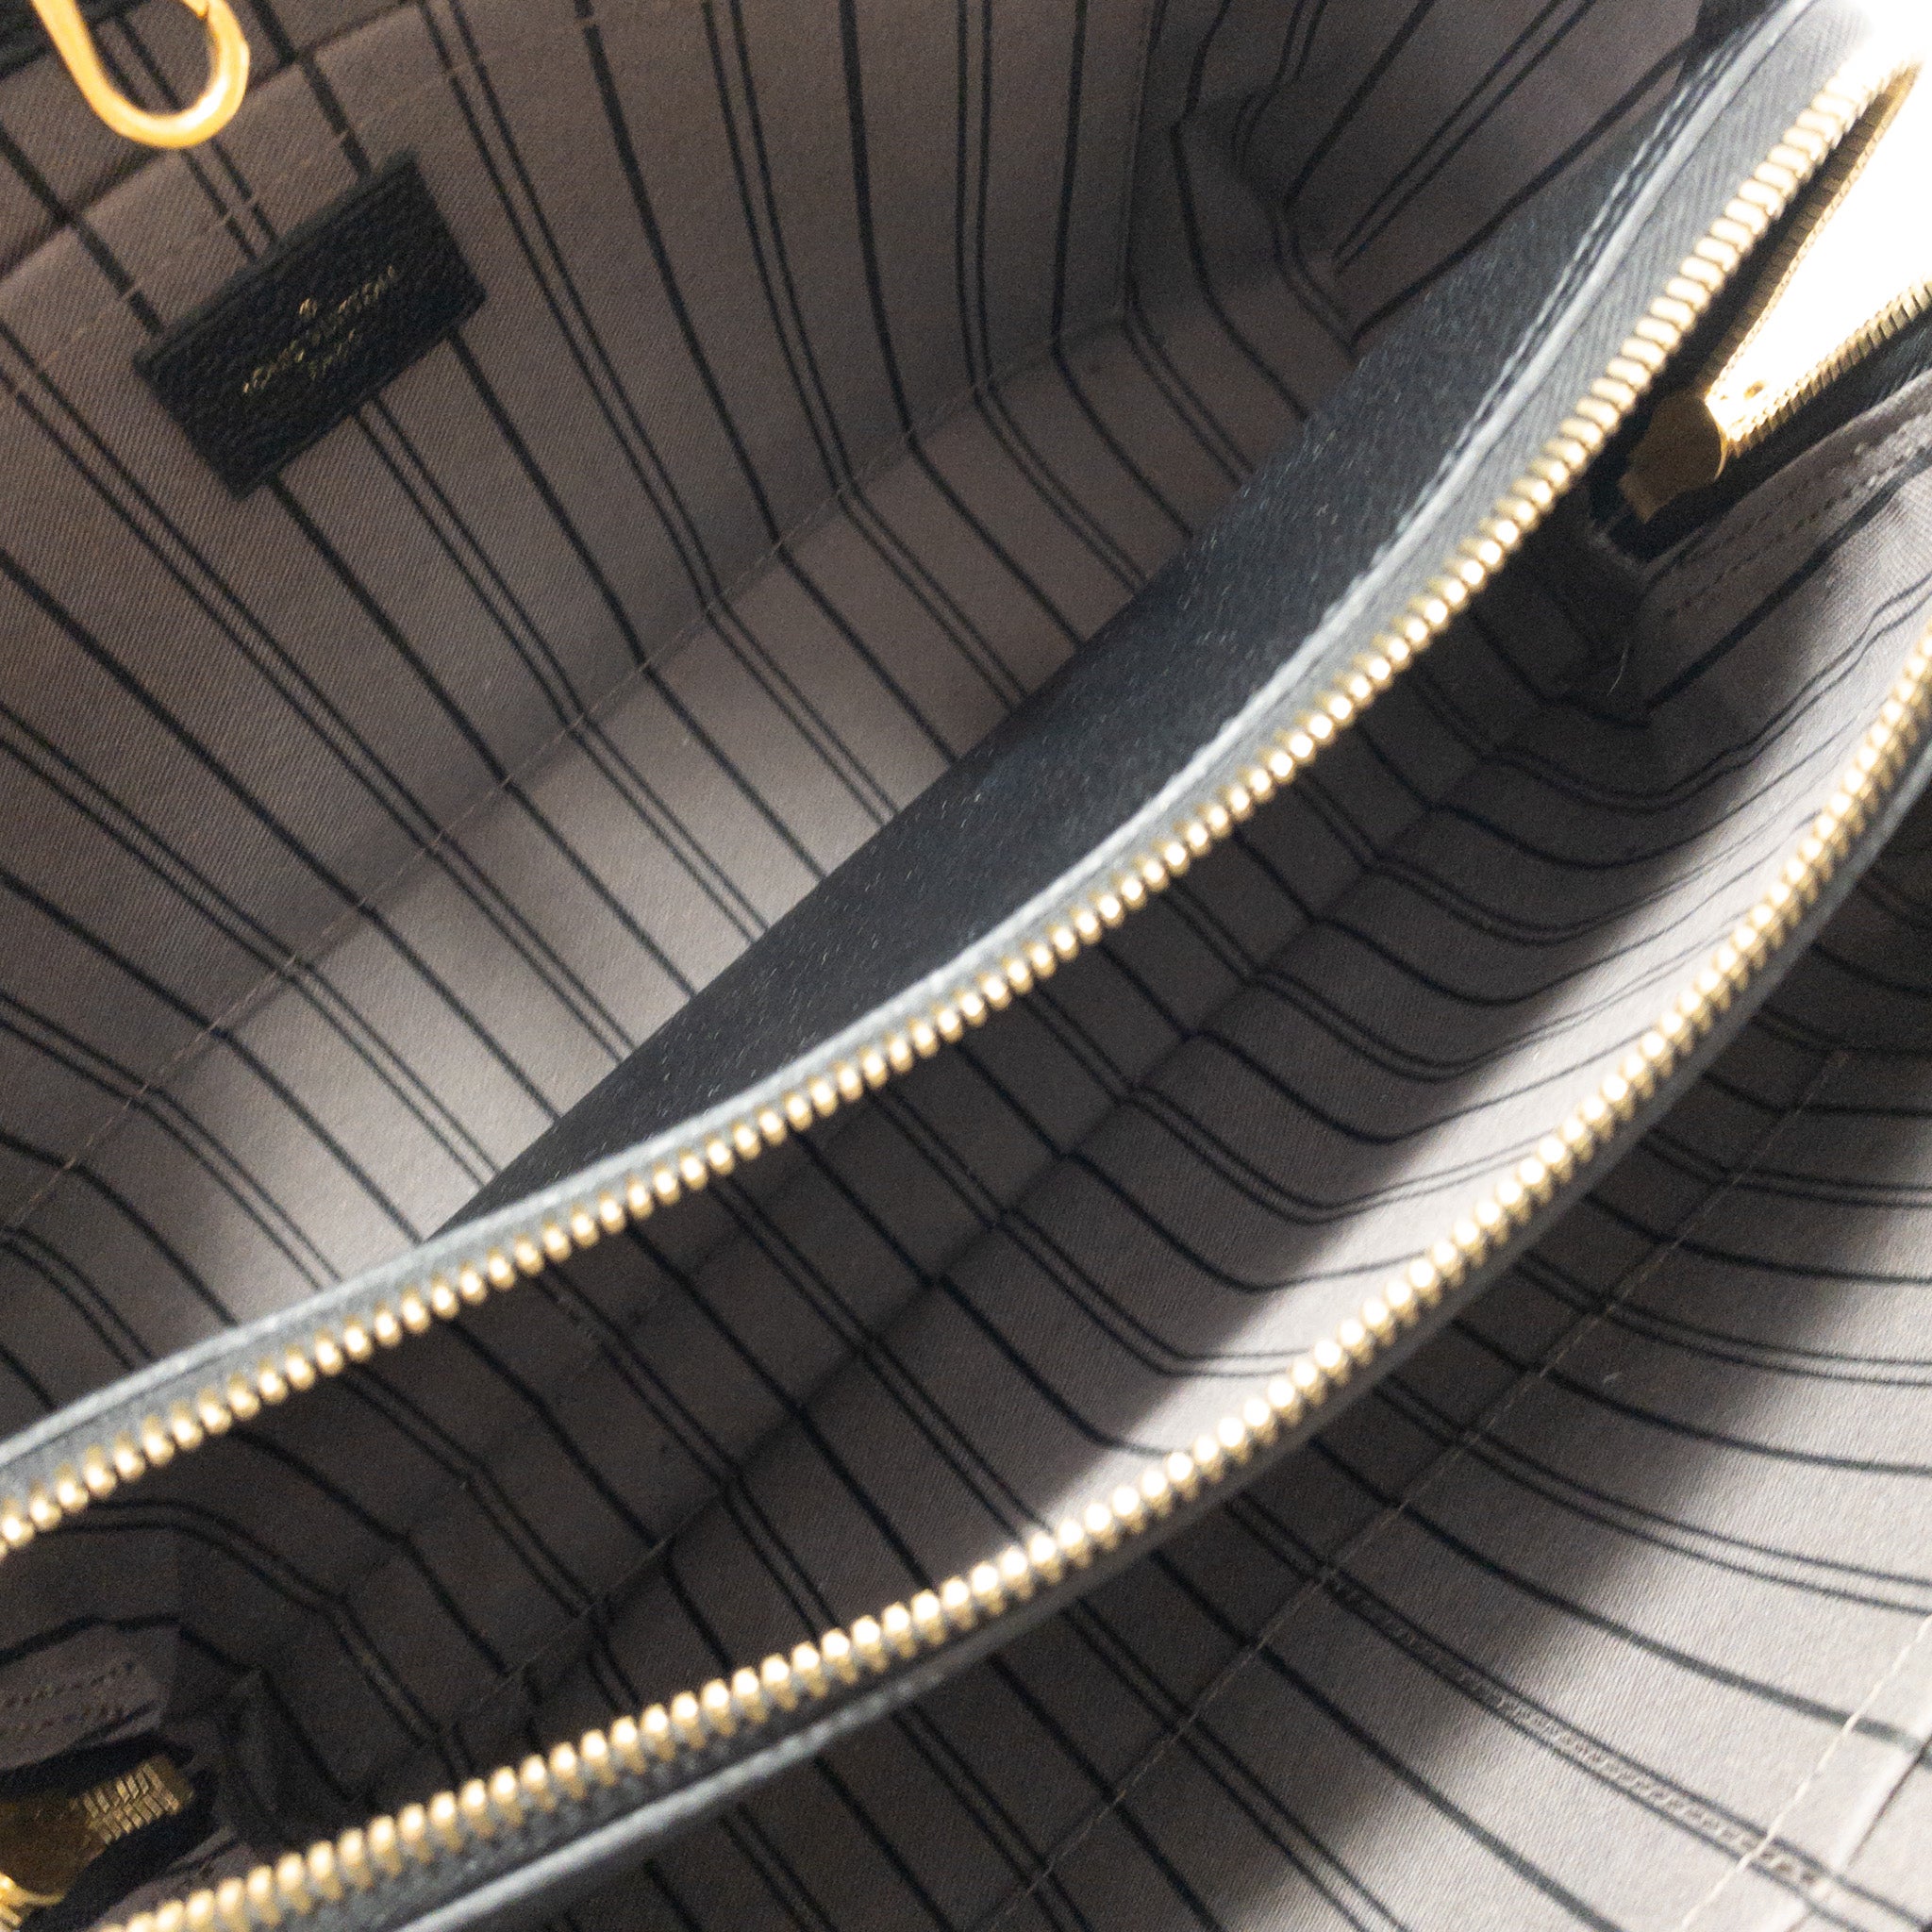 Louis Vuitton Black Empreinte Leather Montaigne